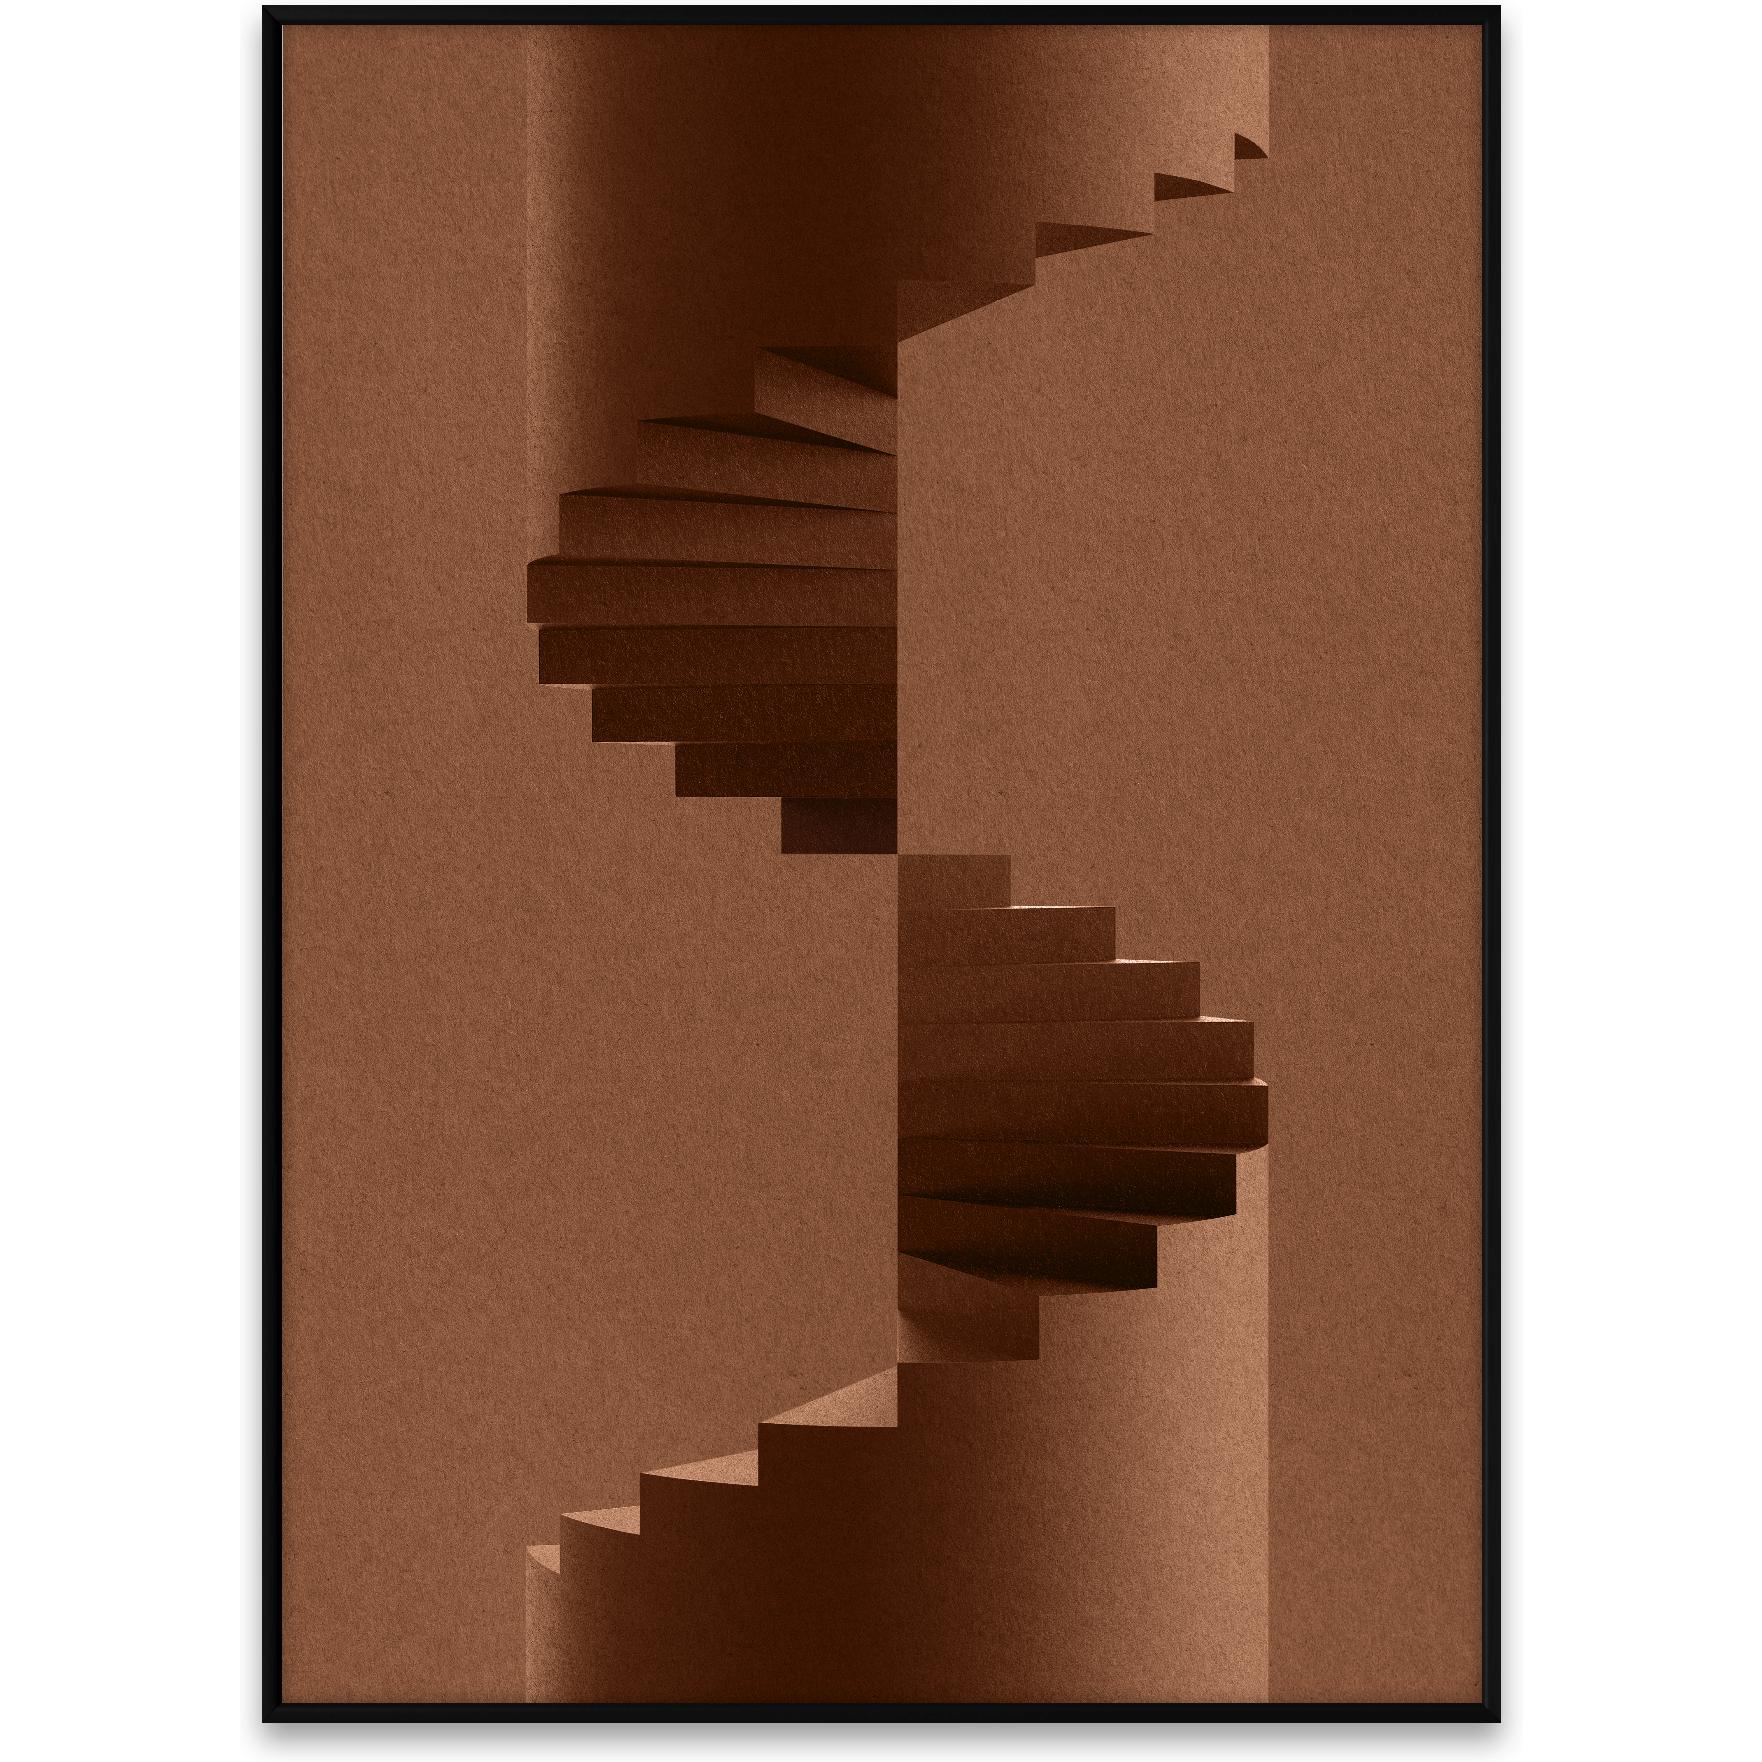 Collective de papel El póster del pilar, 50x70 cm